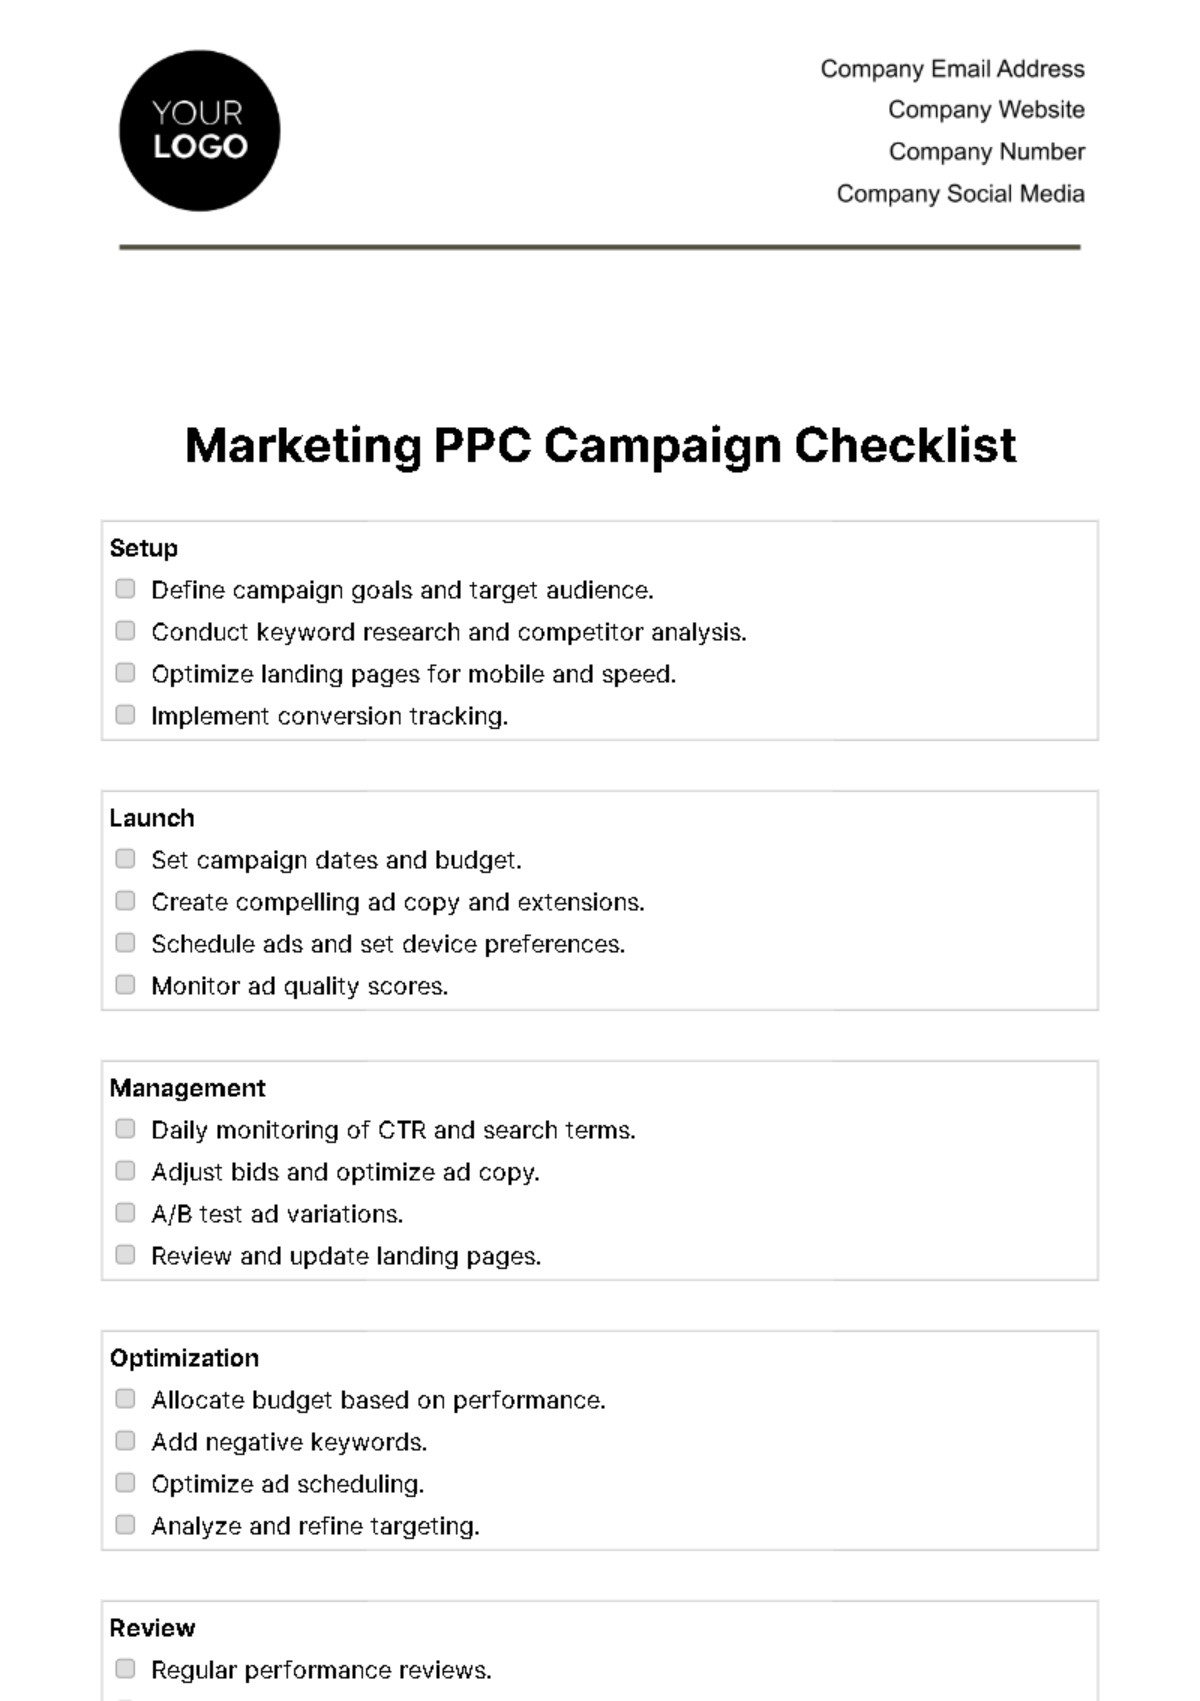 Free Marketing PPC Campaign Checklist Template